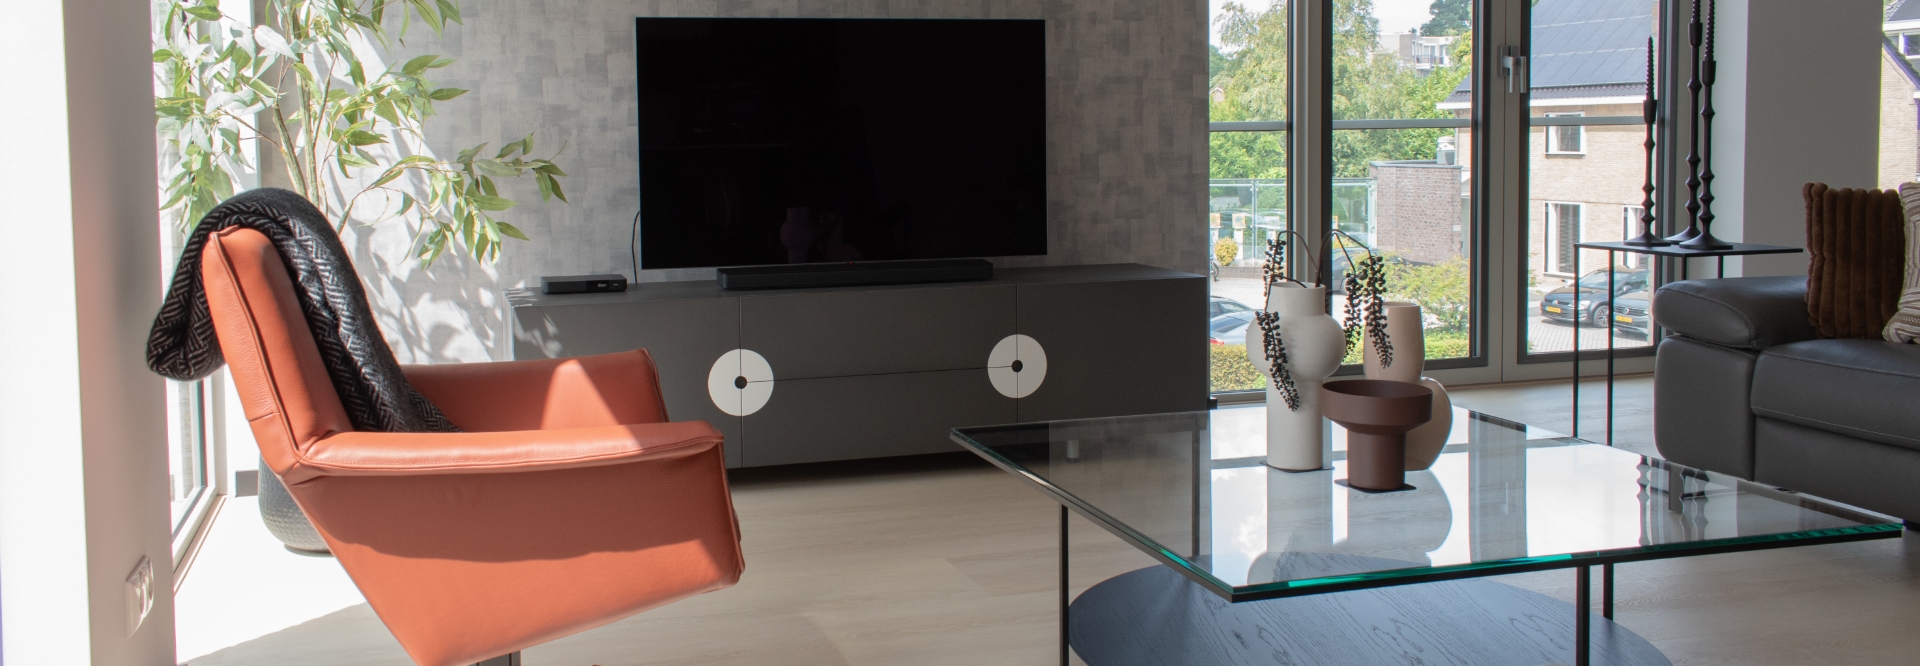 Blog - Een nieuw appartement met een minimalistisch design Benjamins/Ruiter